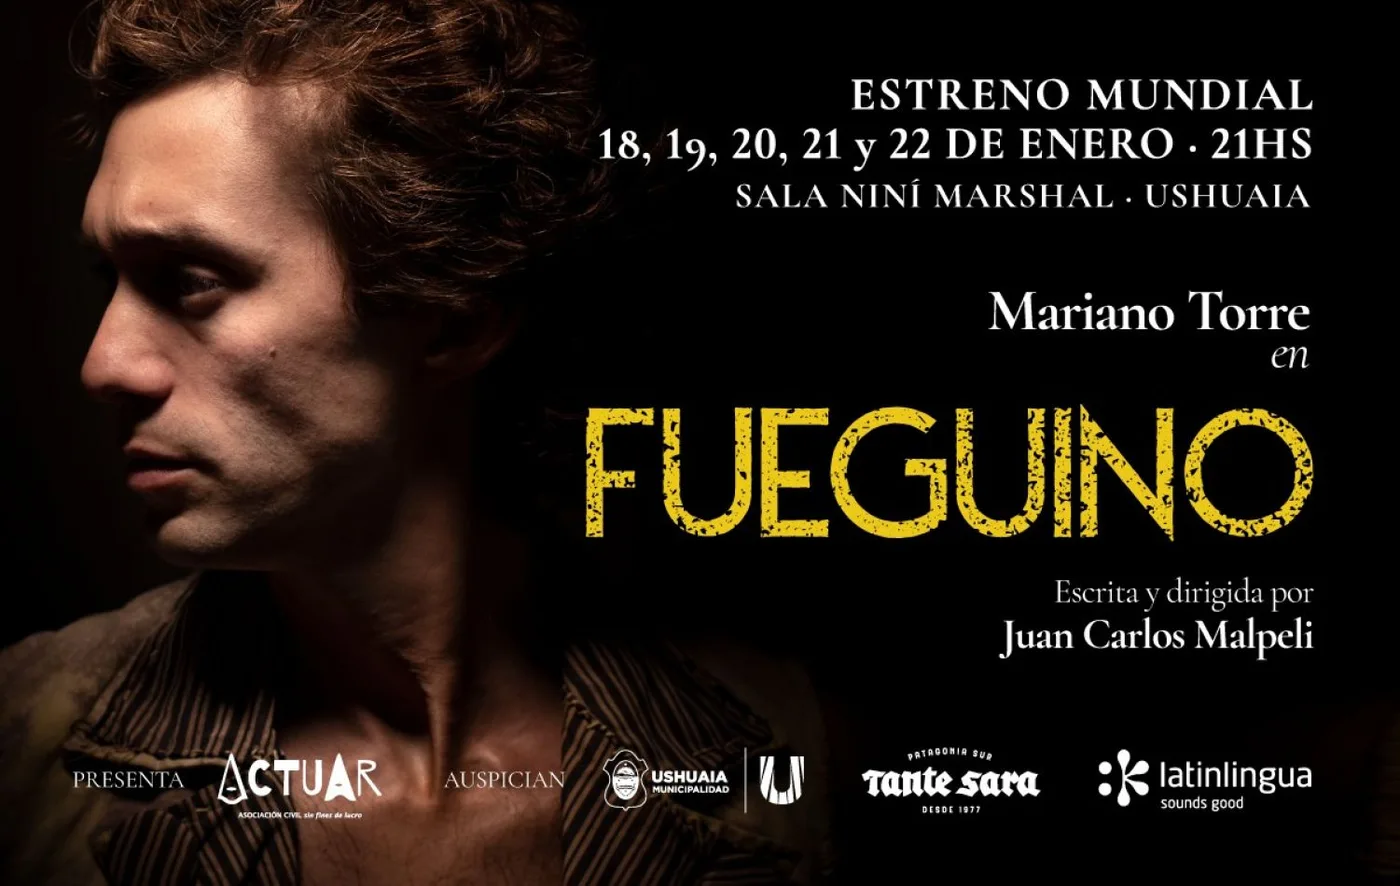 Se presentará la obra "Fueguino" con la actuación de Mariano Torre